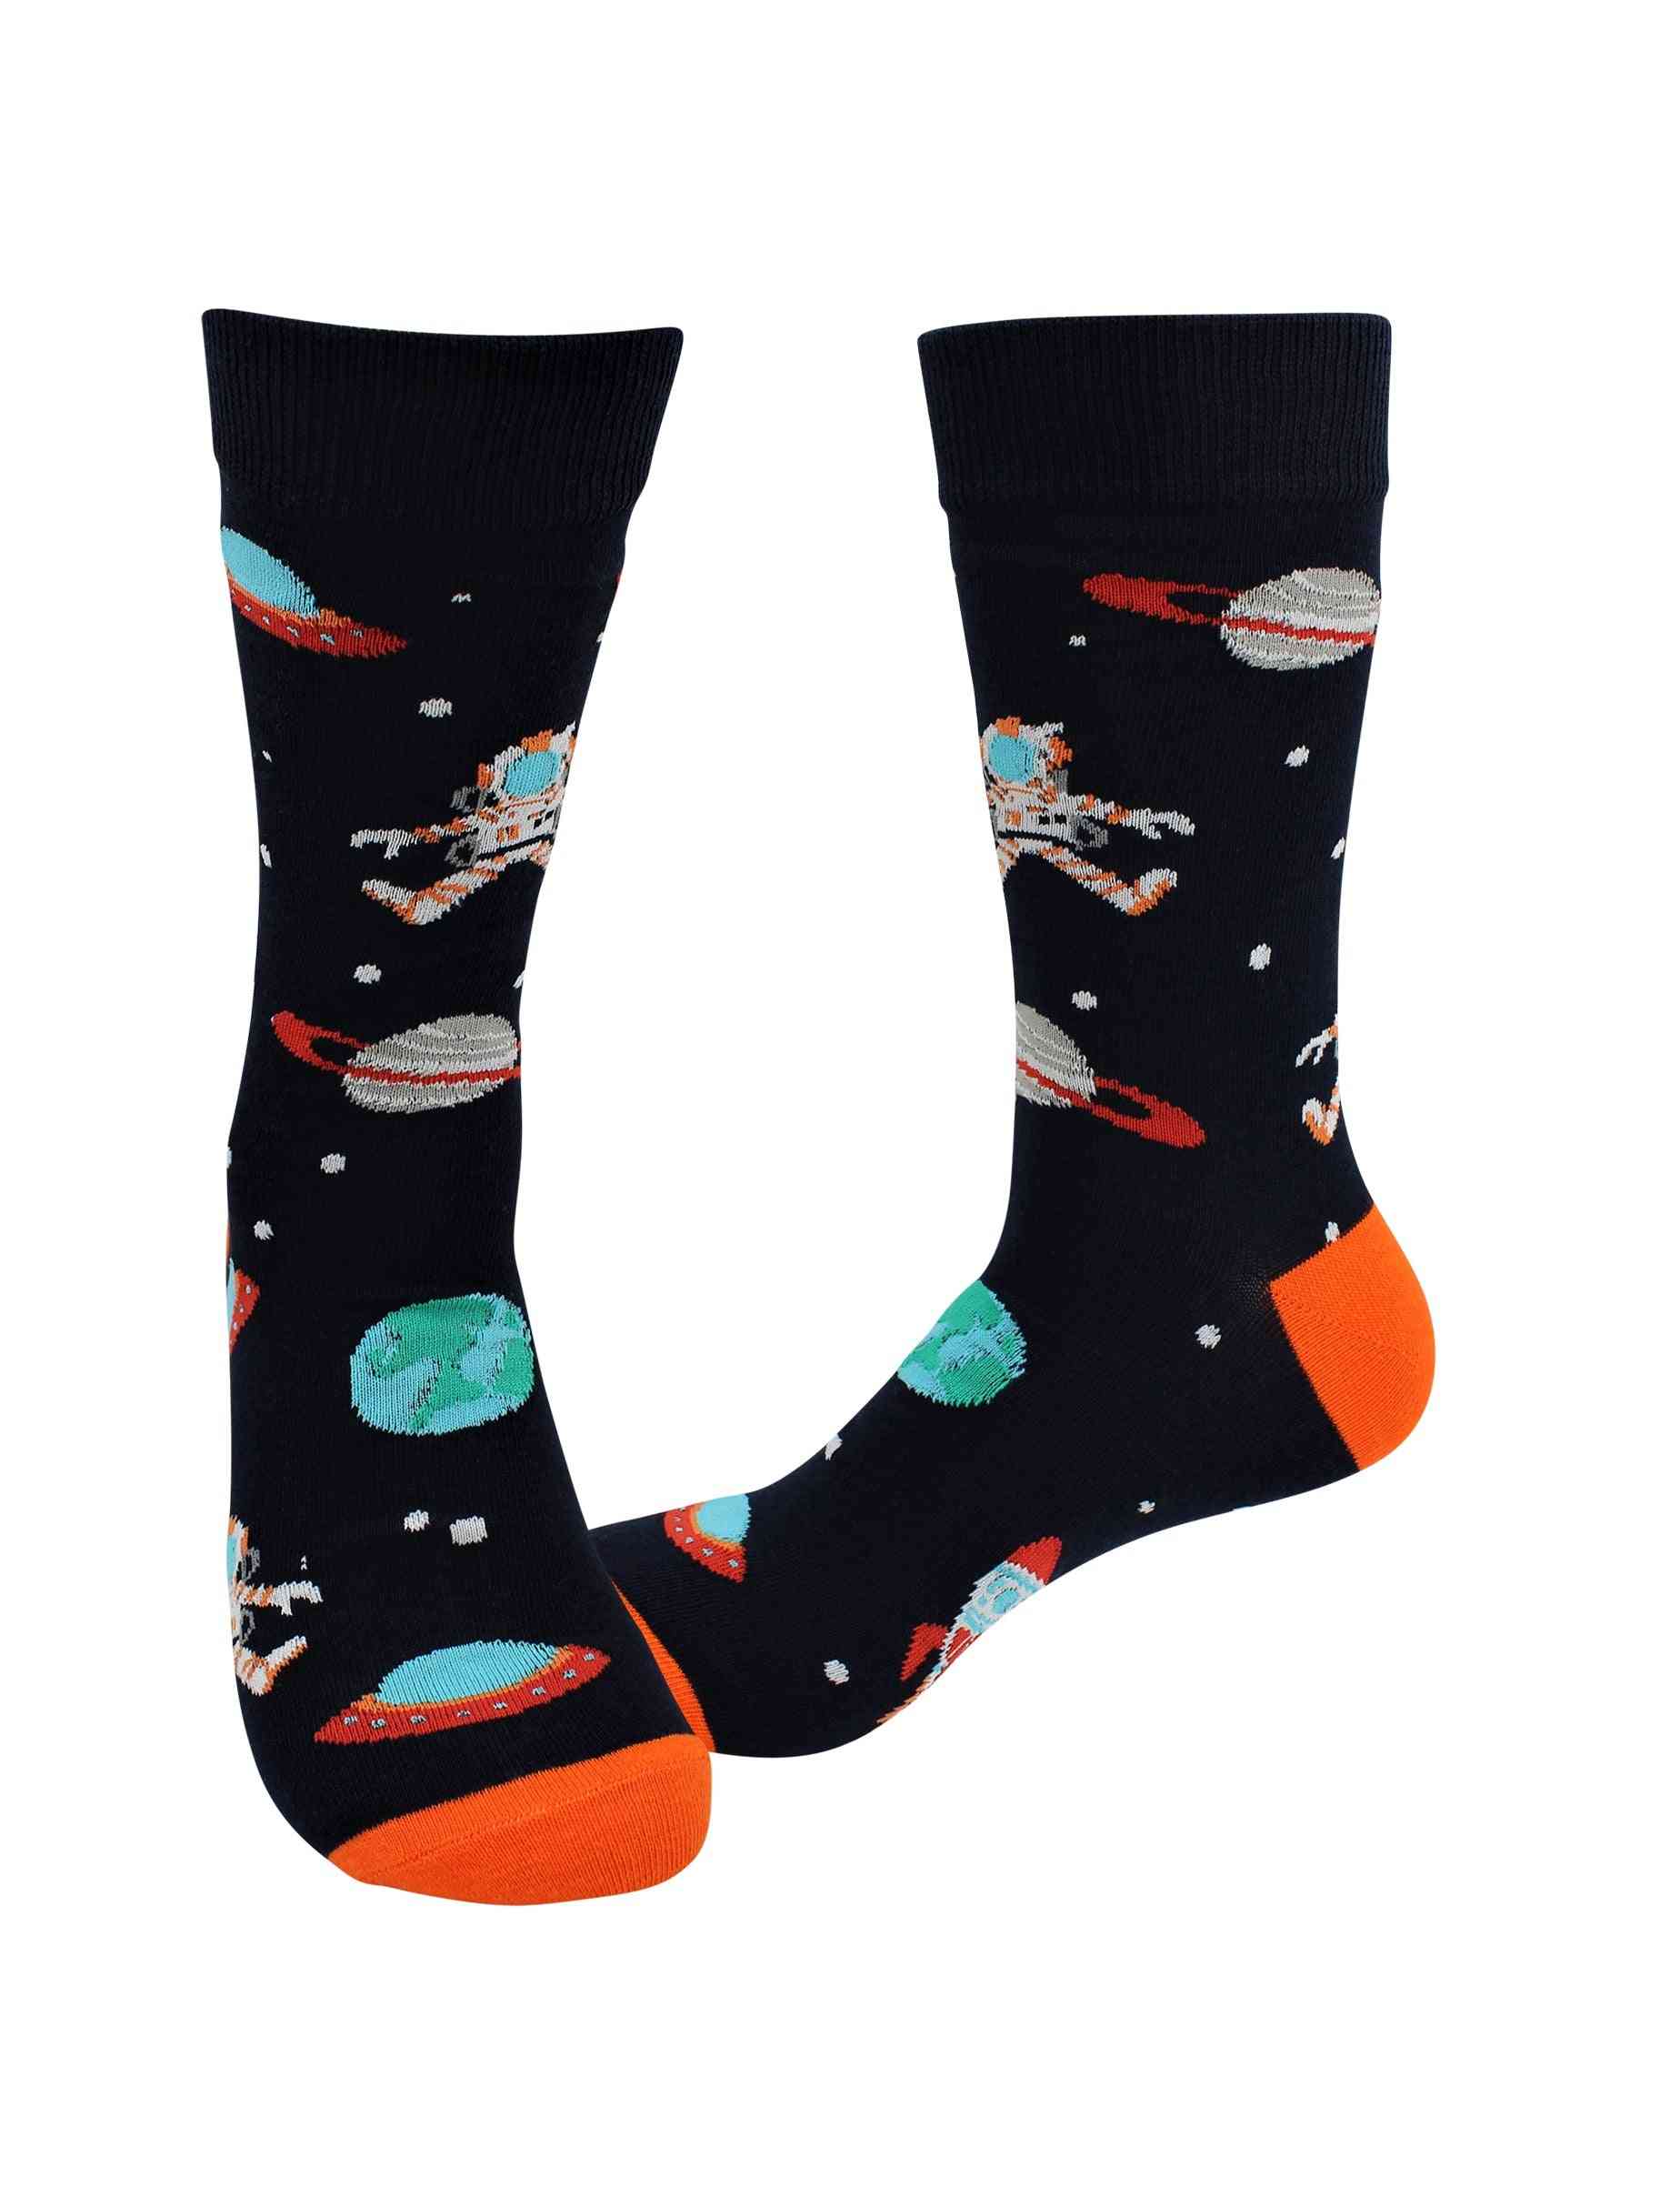 Nemocné ponožky - vesmír / astronaut - neformální ponožky na zeď